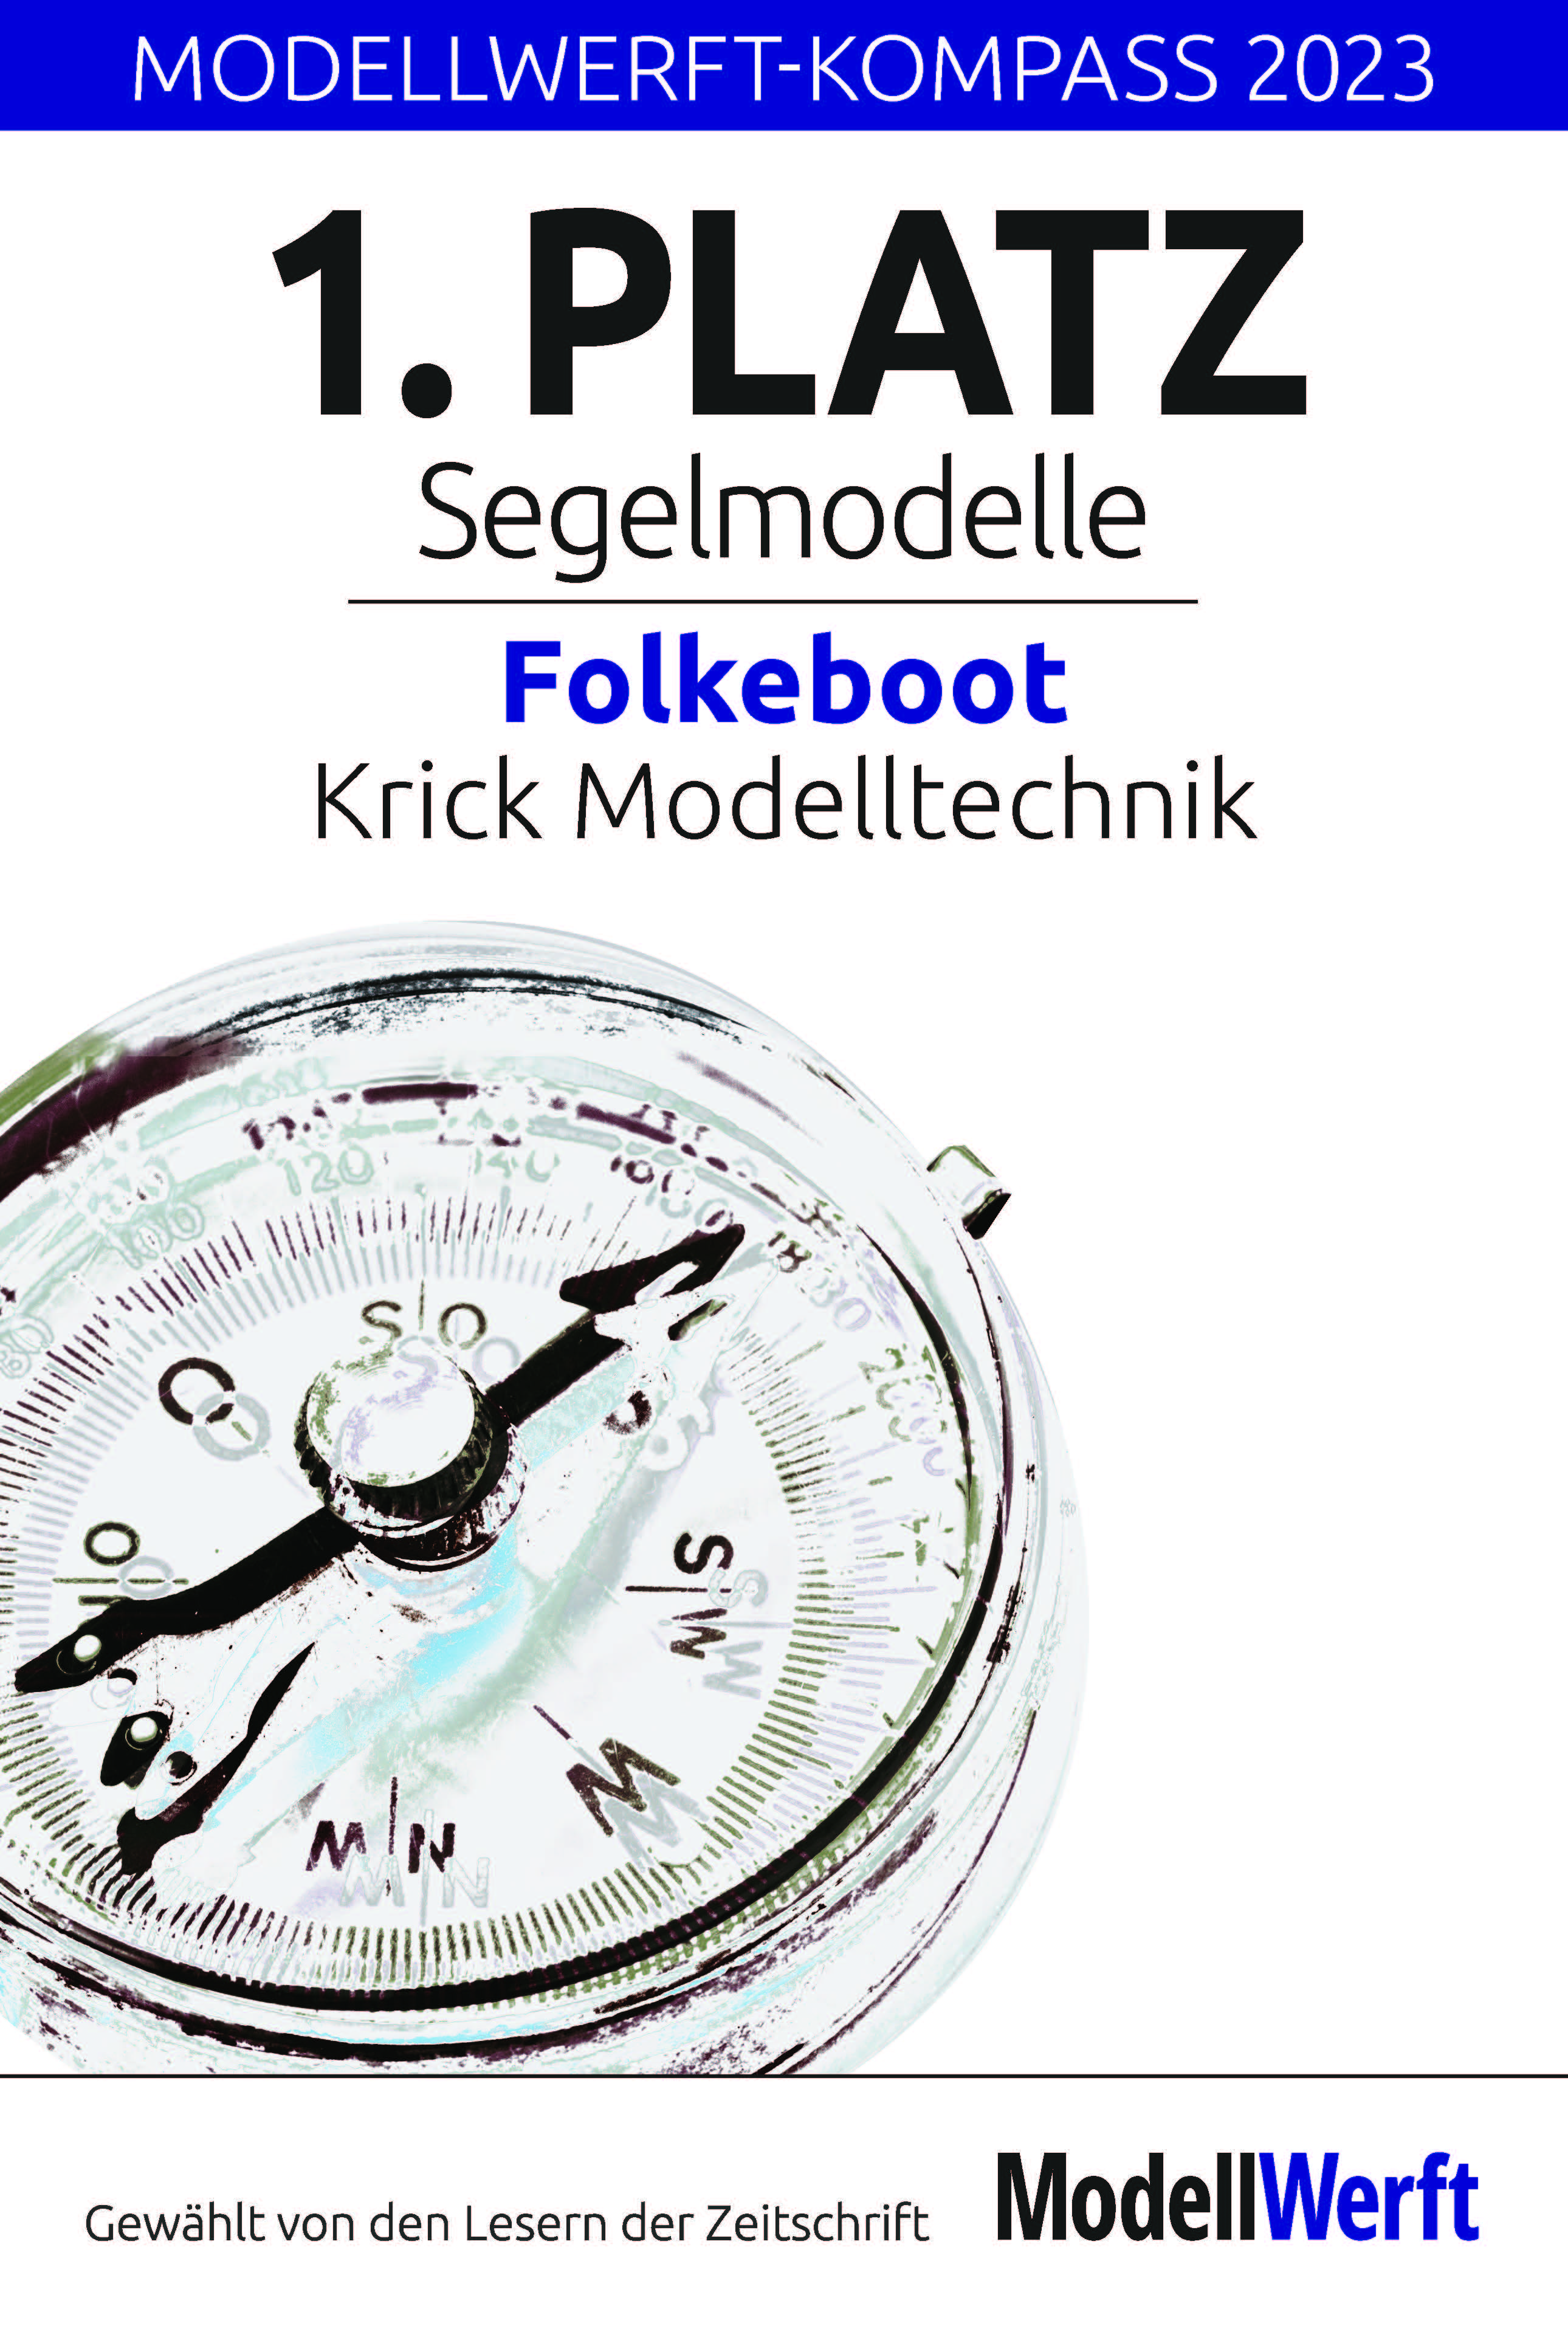 1. Platz für Folkeboot beim Modellwerft-Kompass 2023